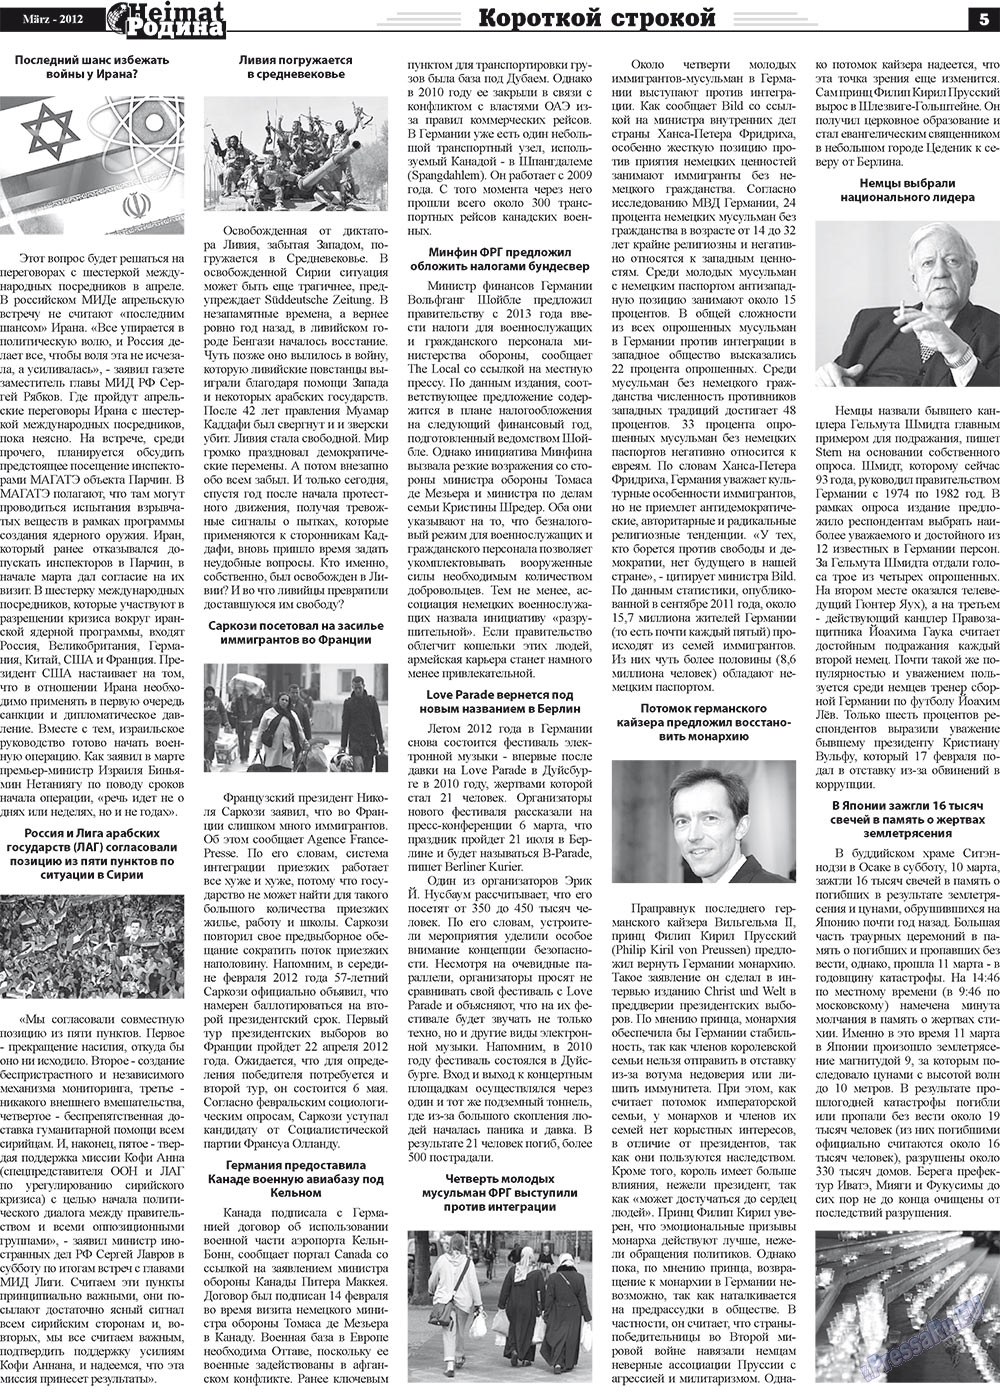 Heimat-Родина (газета). 2012 год, номер 3, стр. 5